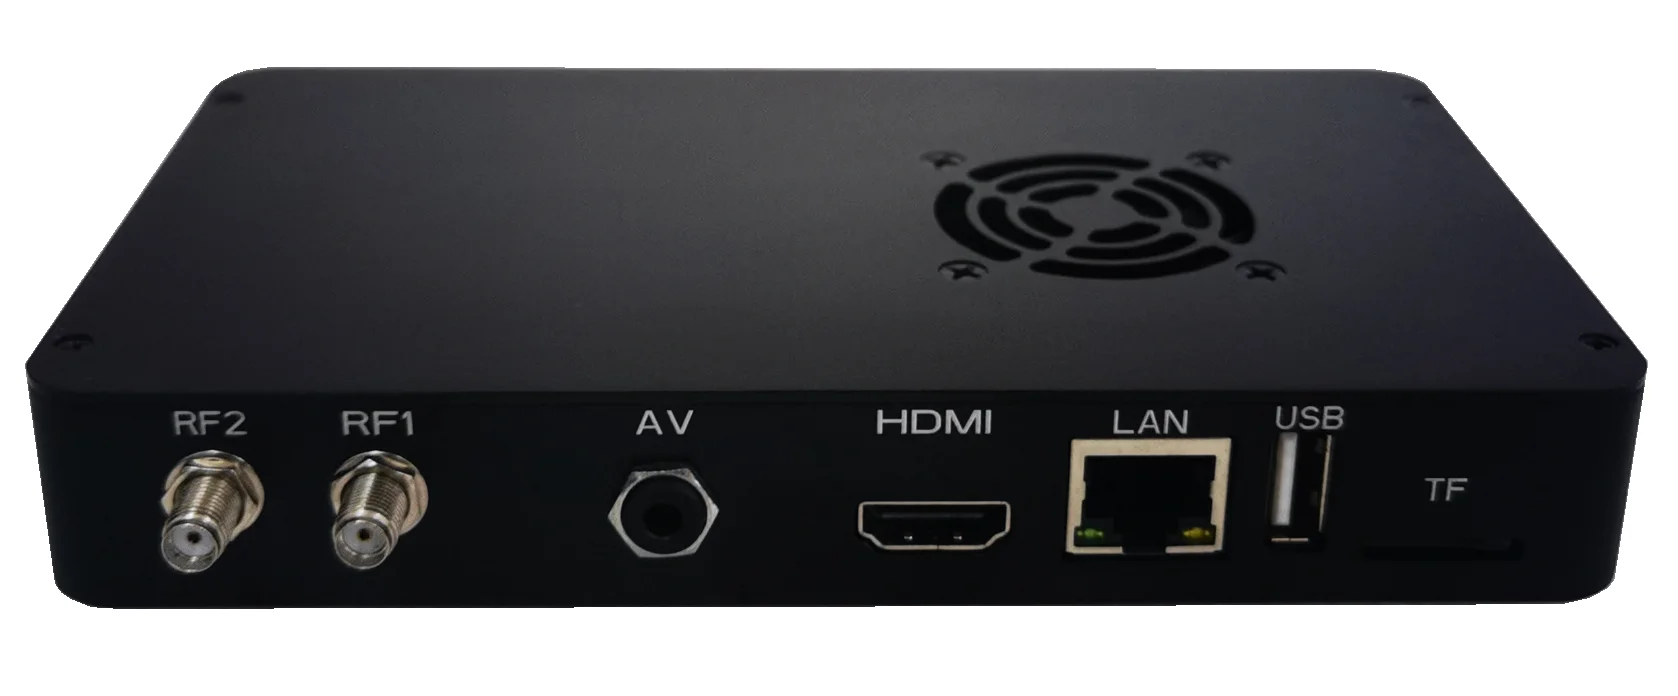 Беспроводной видеопередатчик Cofdm 1080P, мобильный беспроводной видеопередатчик с низкой задержкой, кодировщик H.264/H.265